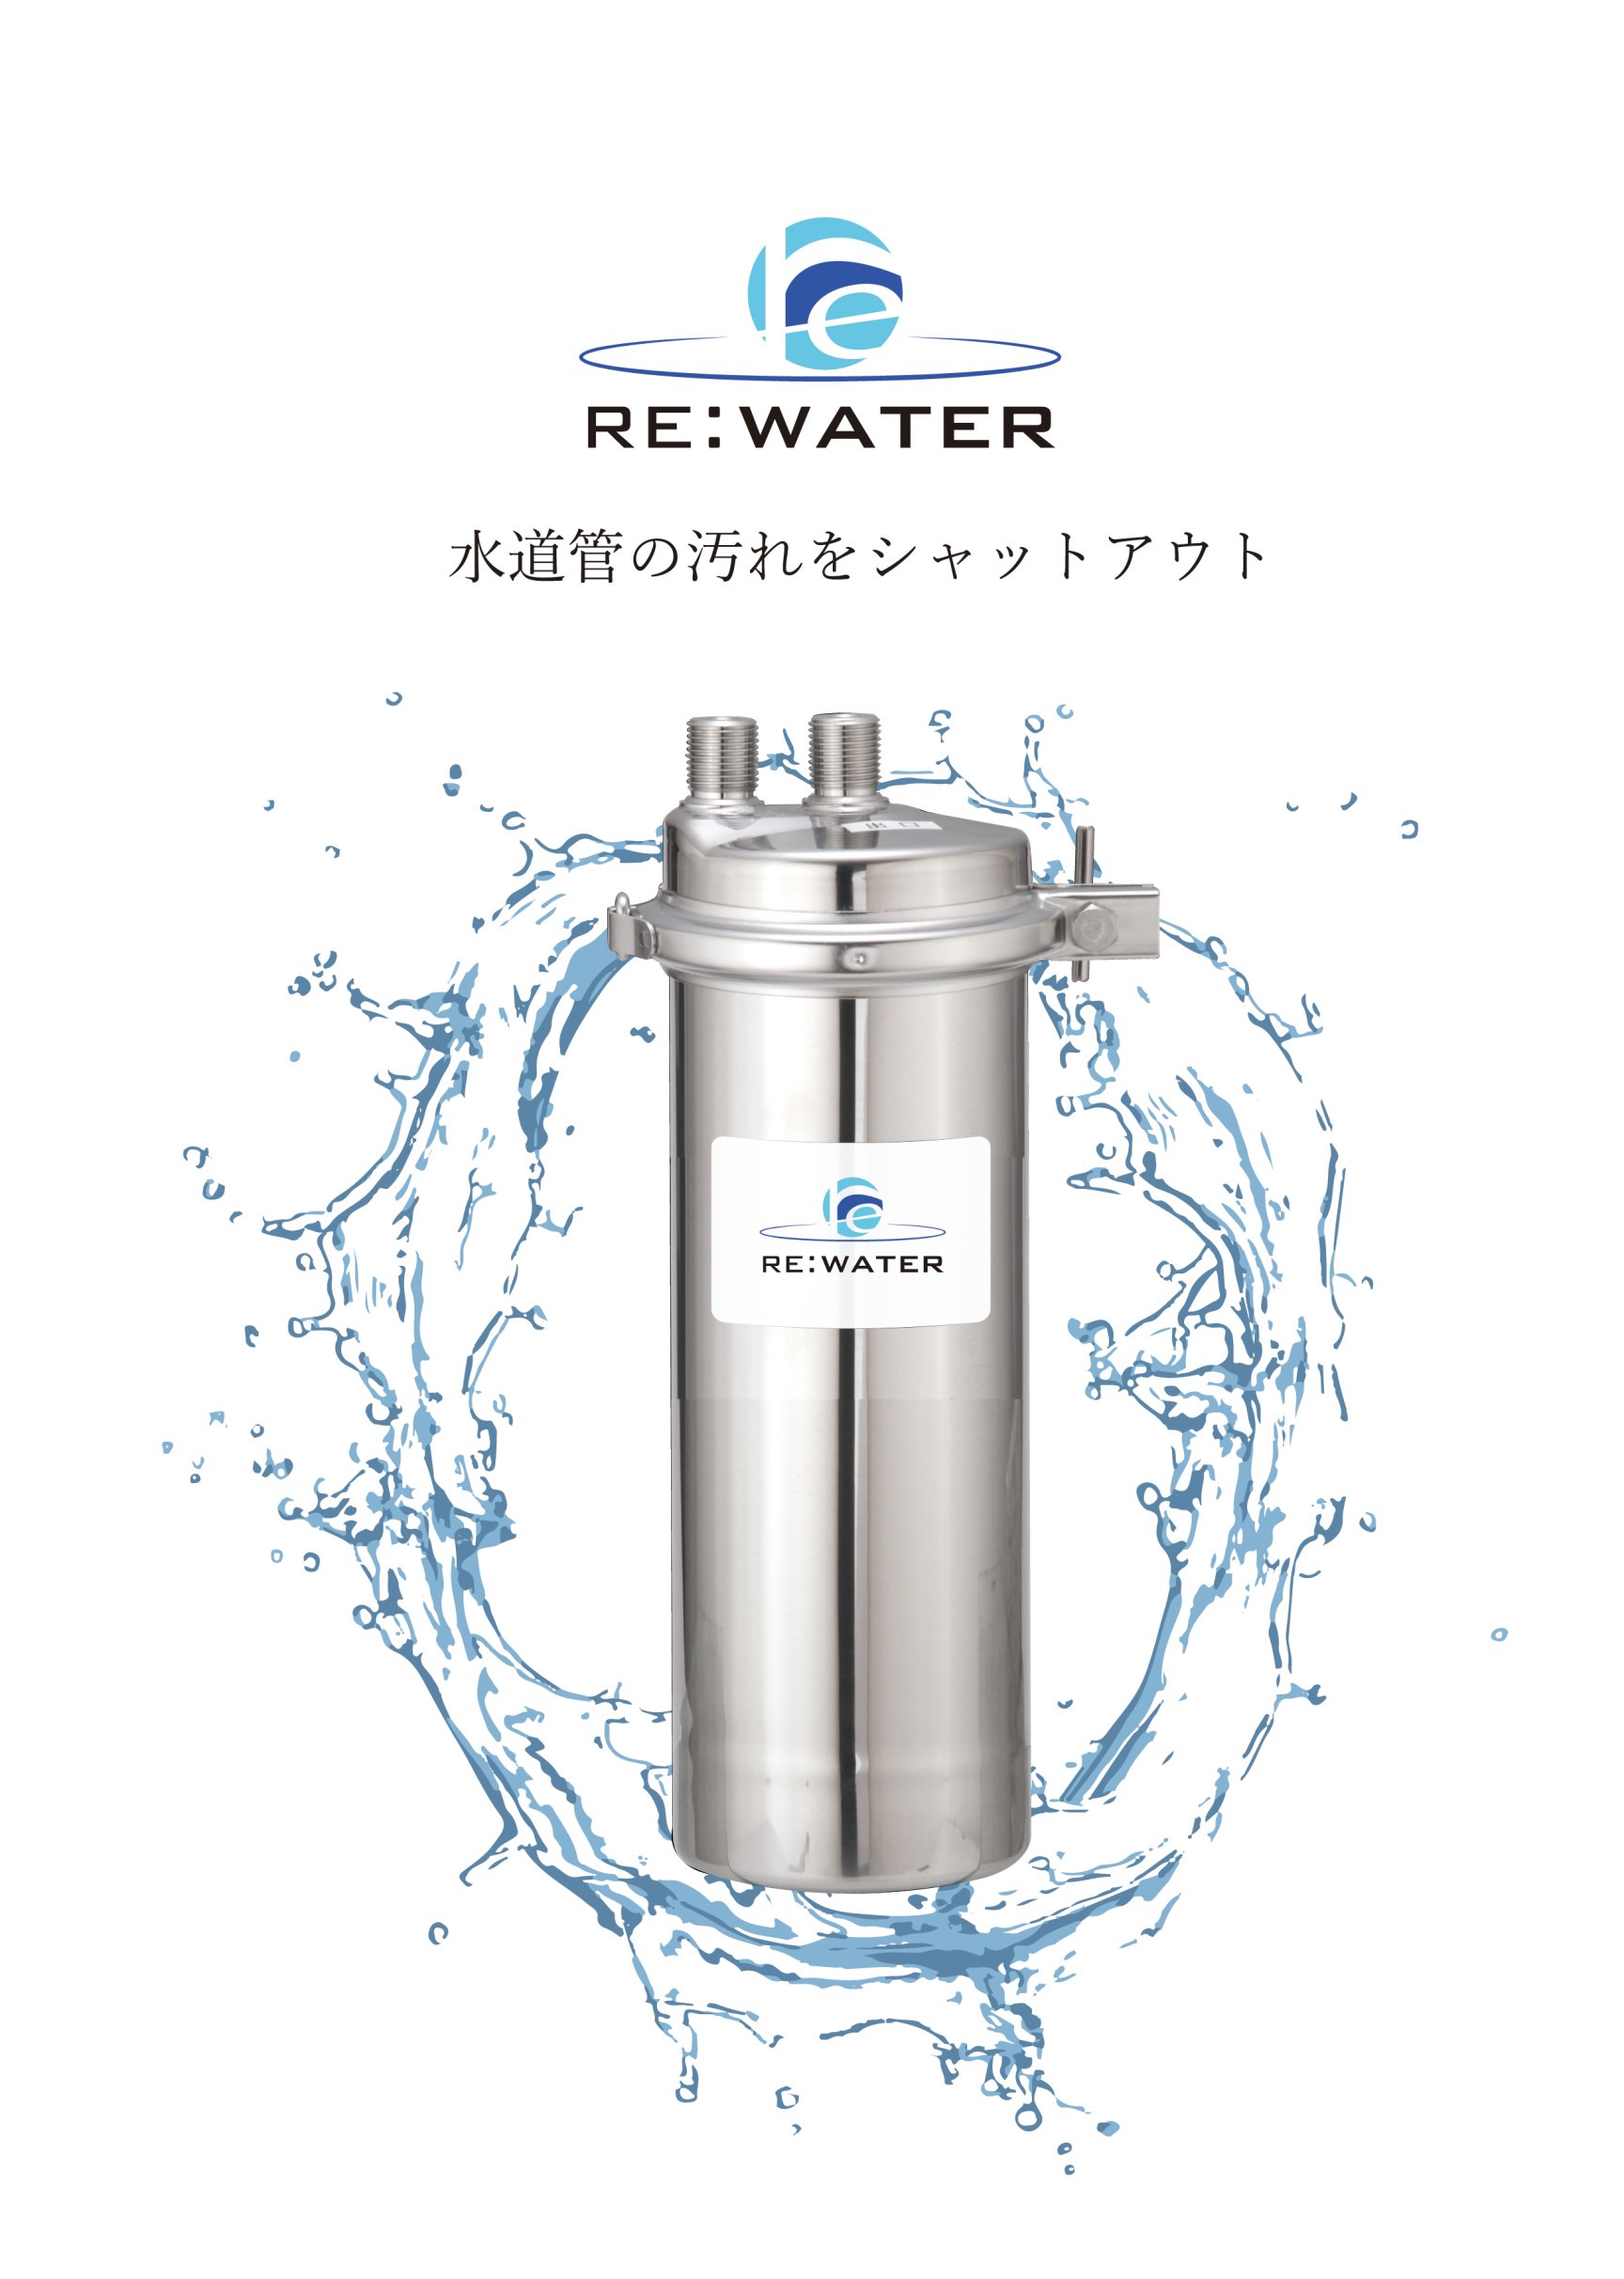 ビルトイン型前処理器「RE:Water」